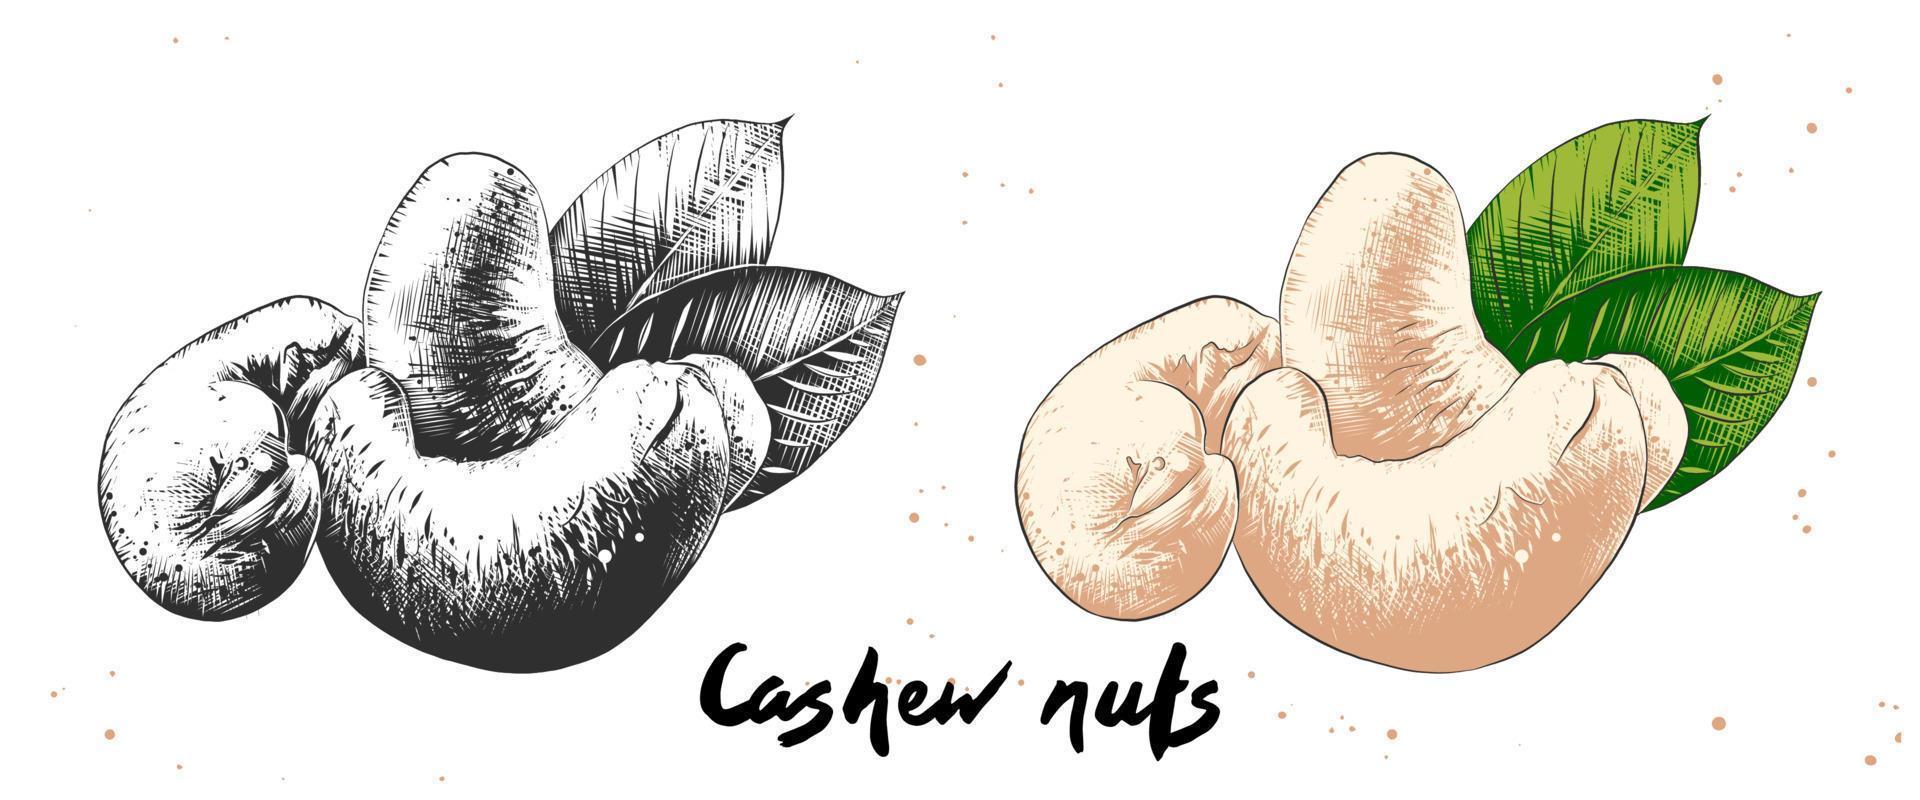 Vektor-Illustration im organischen Gravurstil für Poster, Dekoration, Etiketten, Verpackungen und Druck. hand gezeichnete skizze von cashewnüssen in monochrom und bunt. detaillierte vegetarische Essenszeichnung. vektor